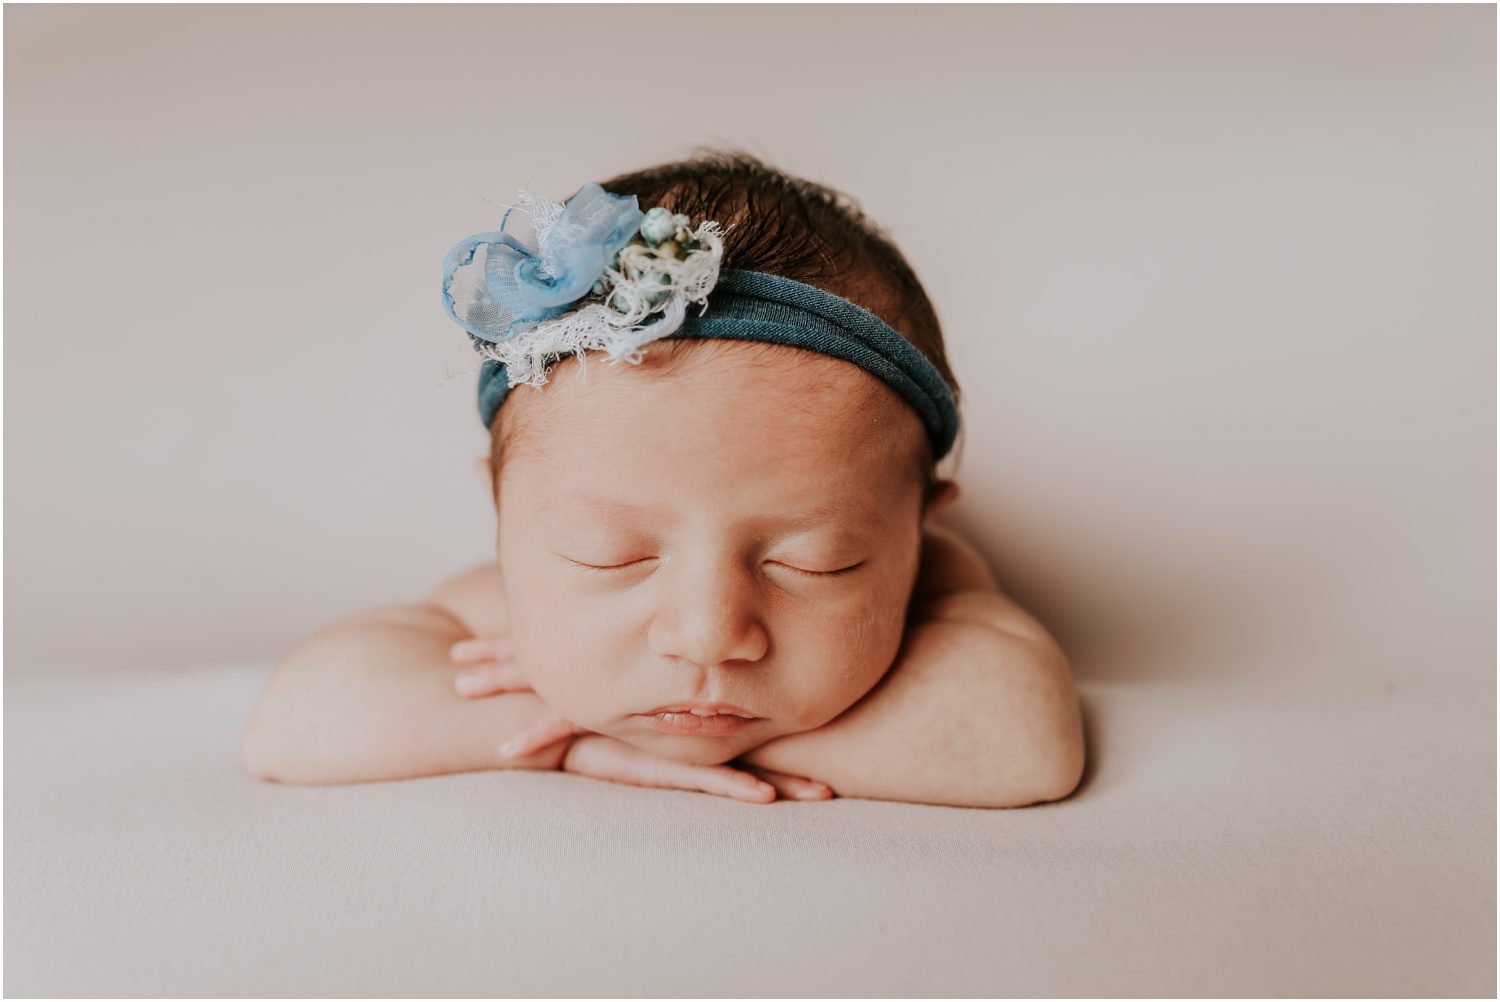 NEPA Studio Newborn Photographer, newborn baby photo, portrait of newborn girl